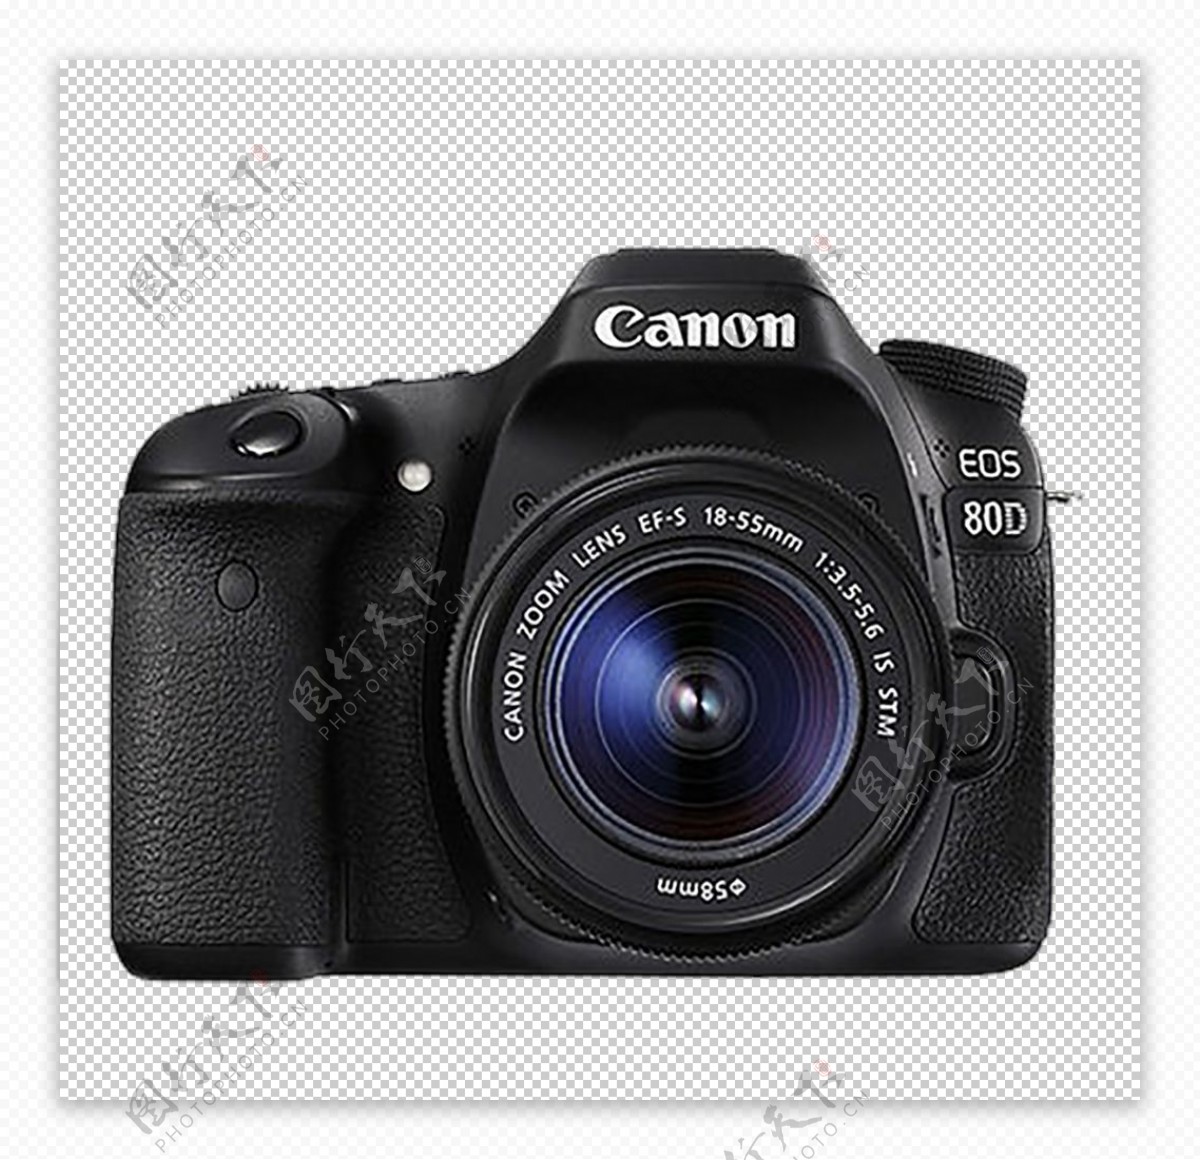 用canon单反相机拍照时，怎么将图片存为raw格式？-Canon 相机照片存储格式有RAW格式JPEG格式，...